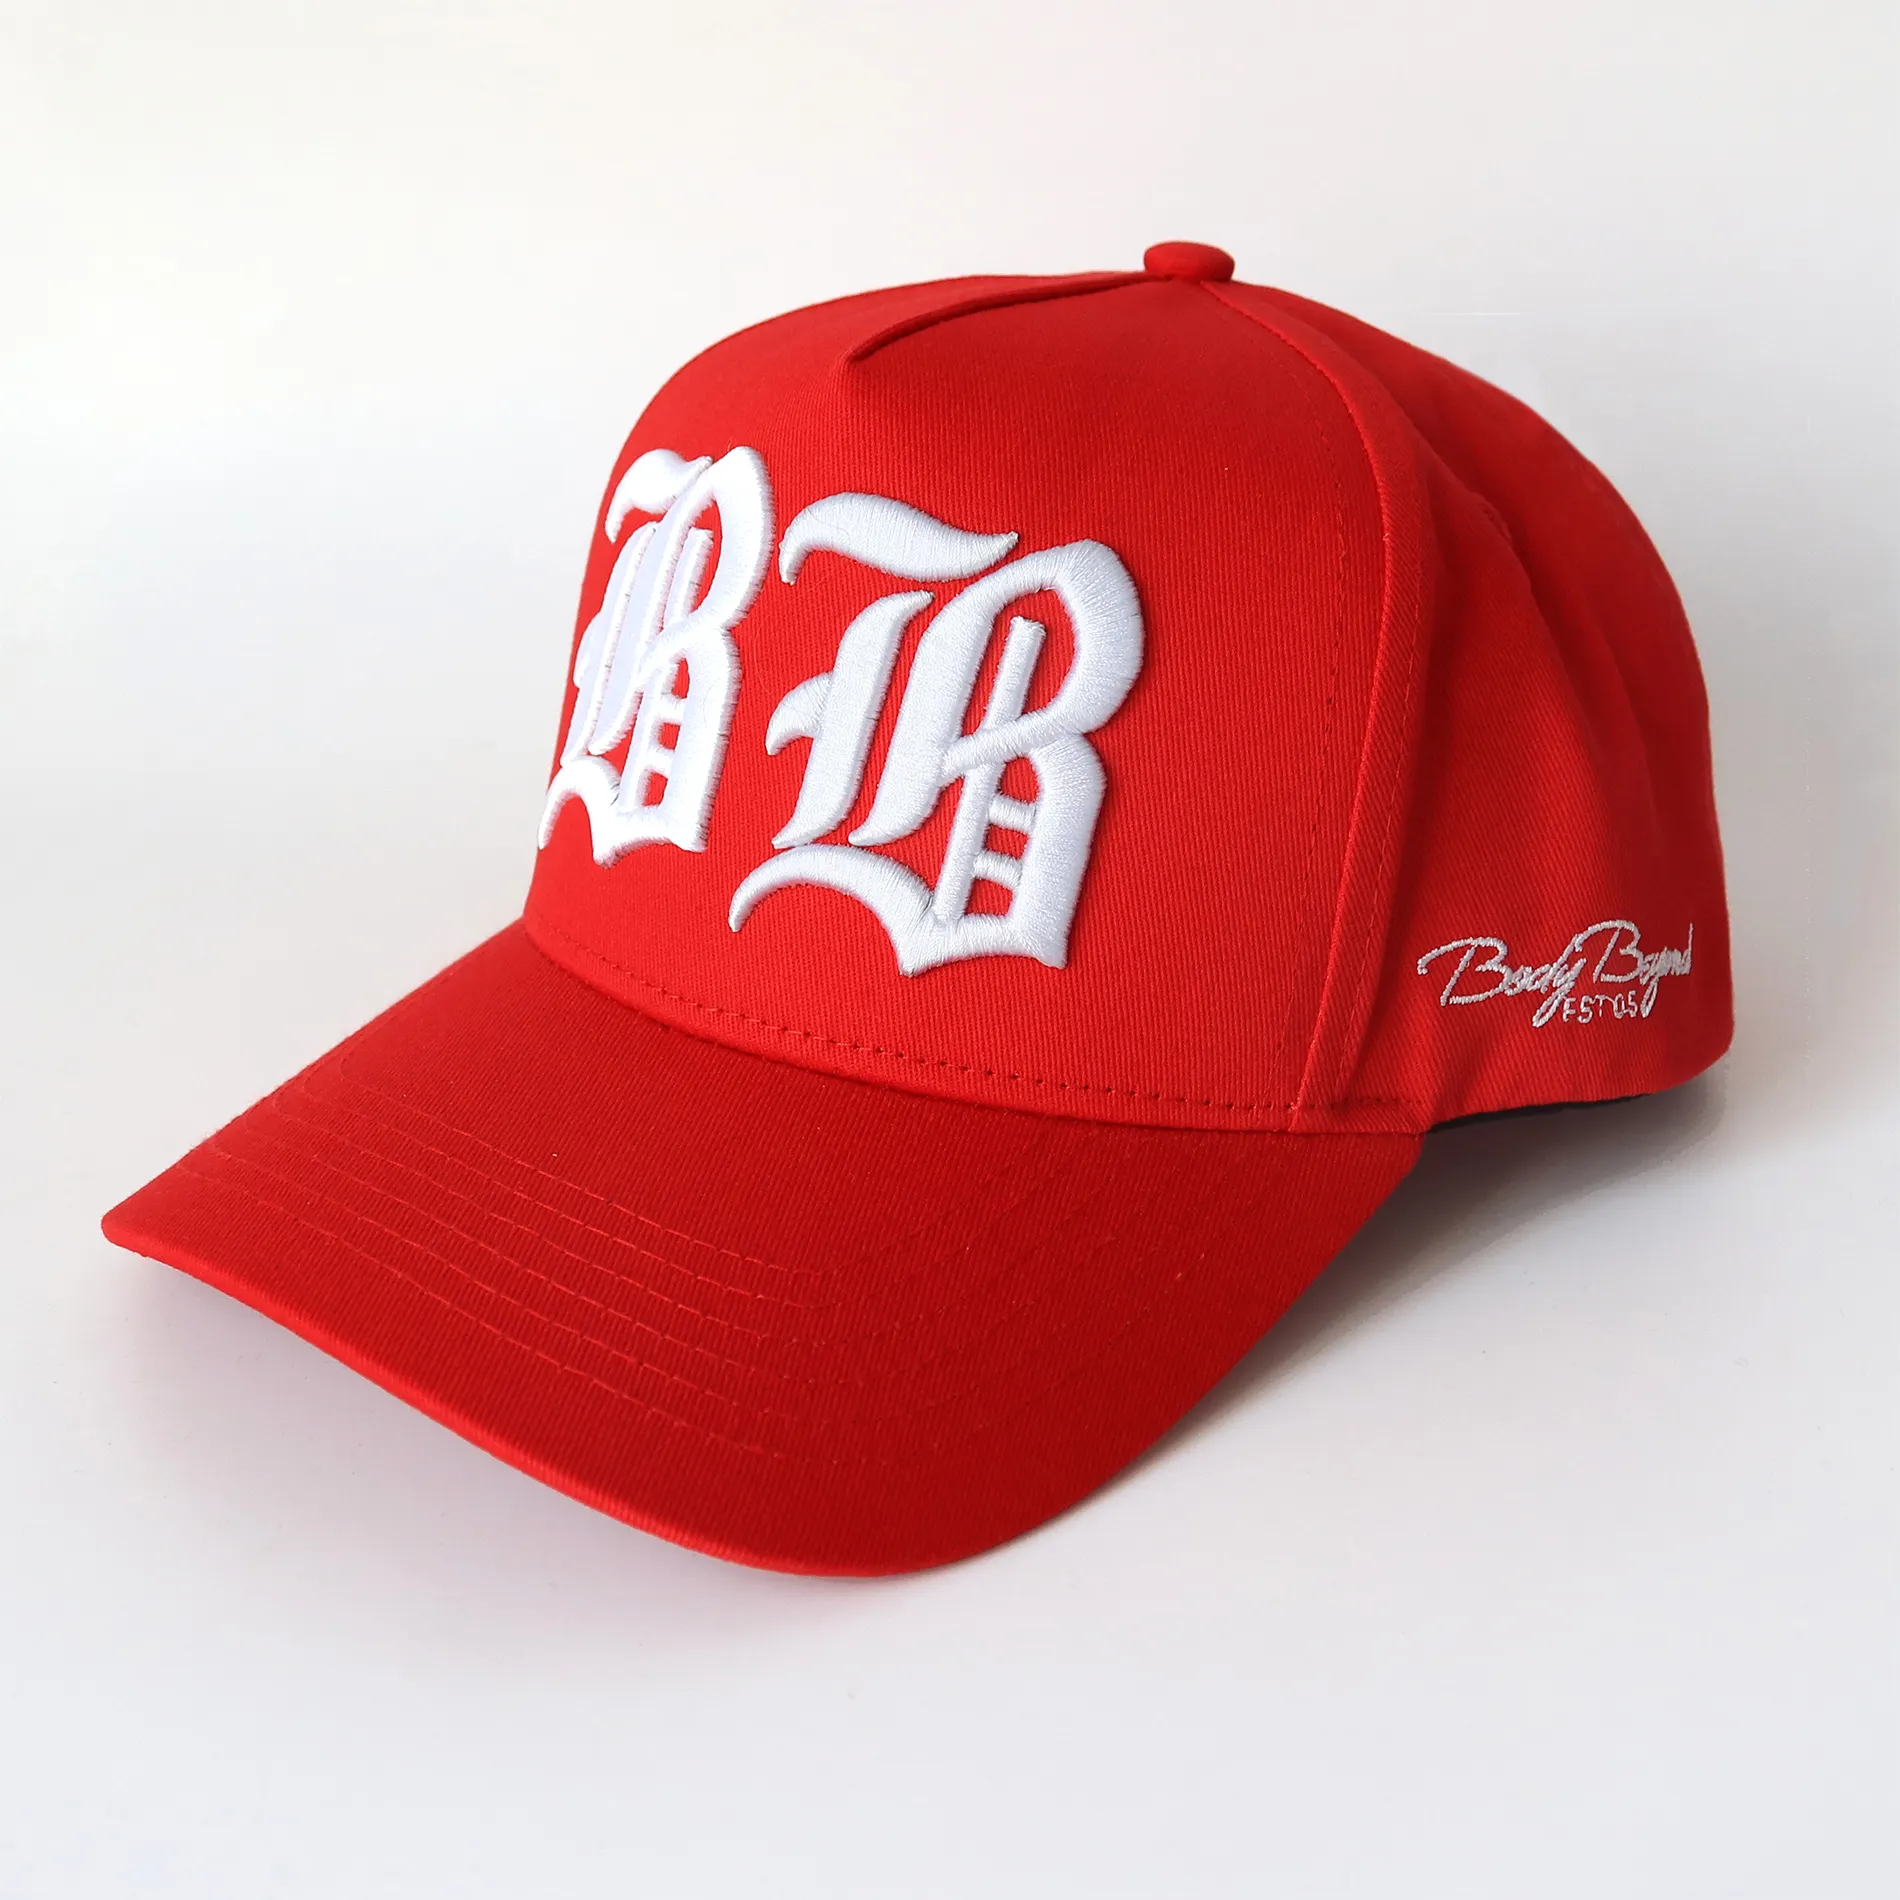 Профессиональная Изготовленная на заказ 3D вышивка логотип хлопок саржа 5 панель A рамка структурированная красная цветная спортивная бейсболка и шляпа